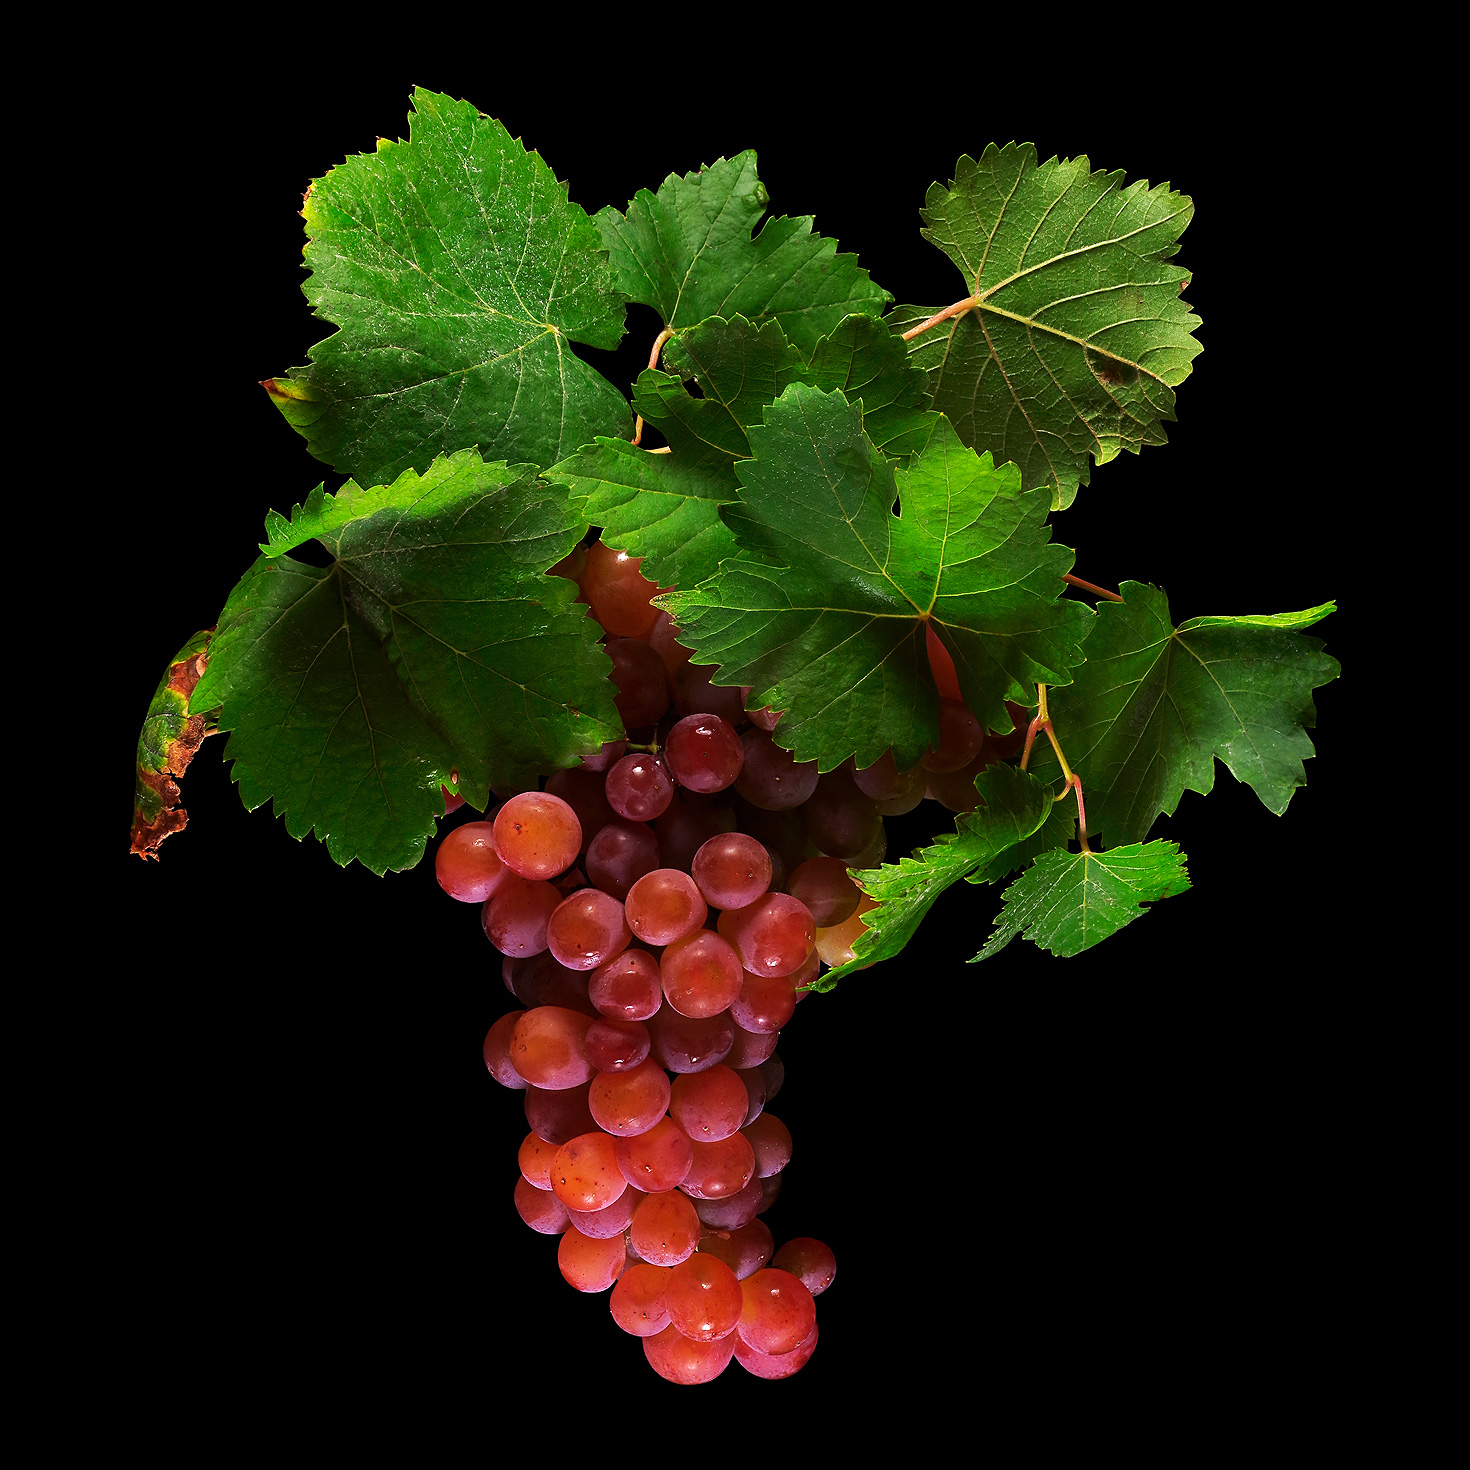 Common Grape Vine (Schonburger): Vitis vinifera subsp. vinifera